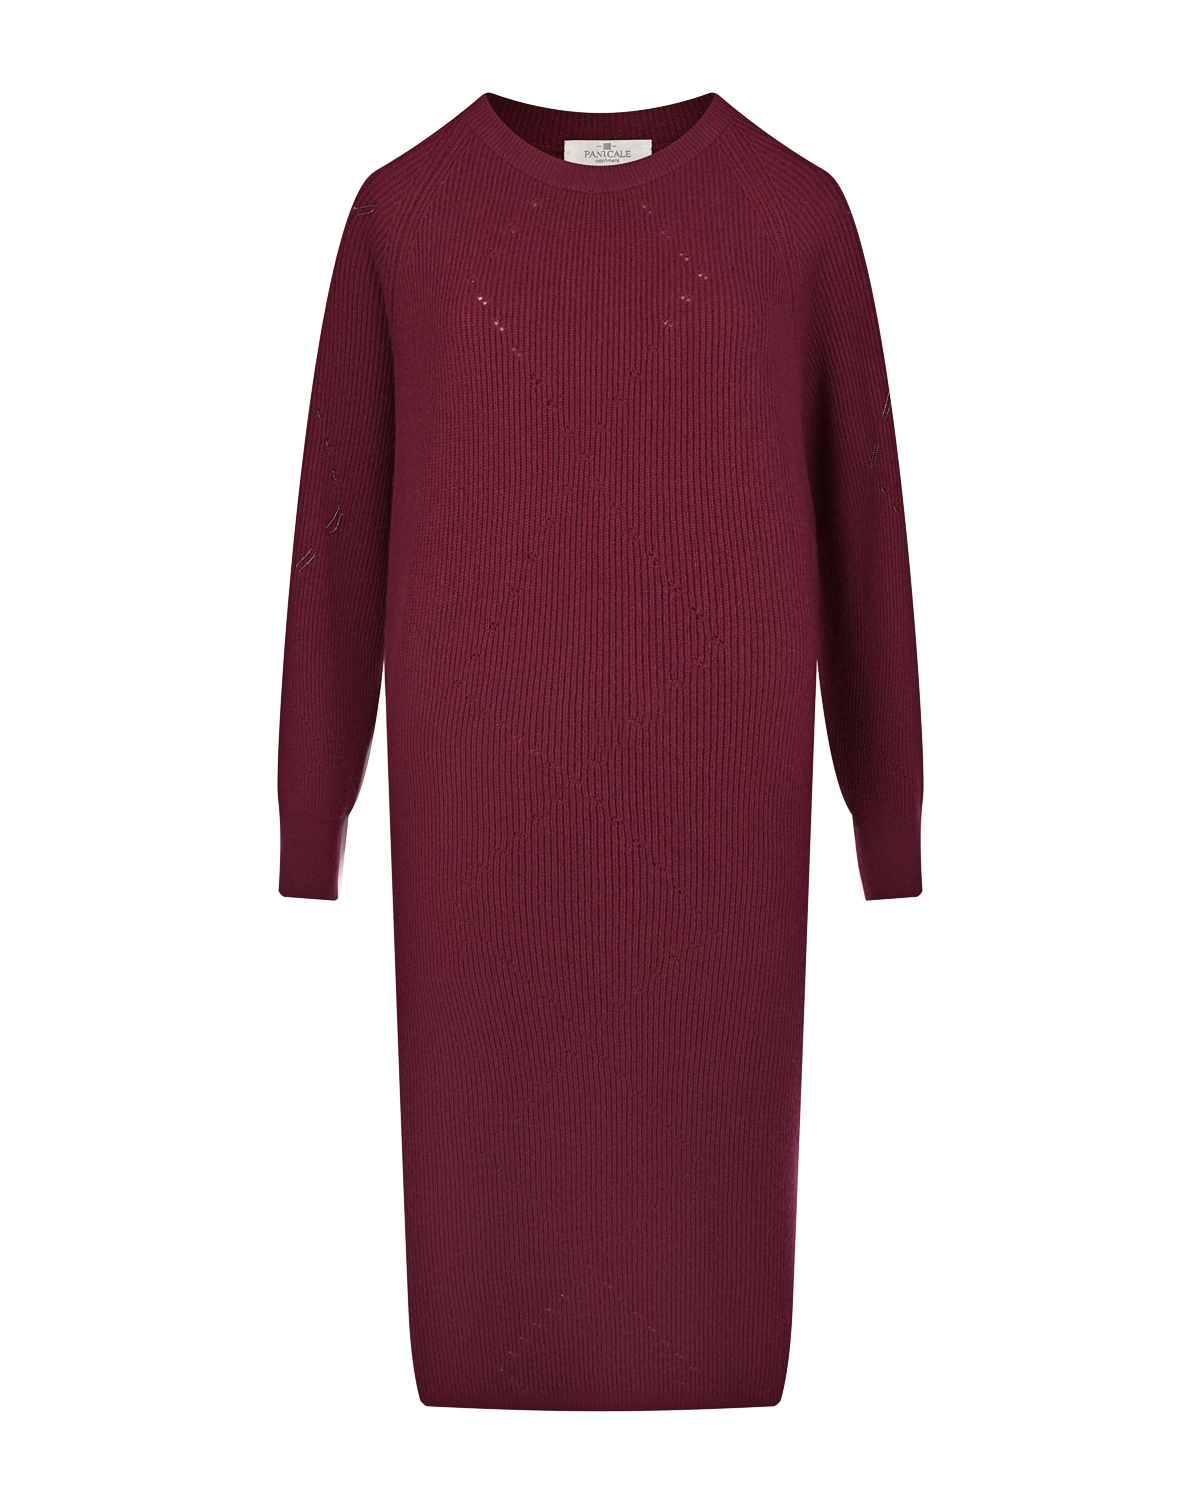 Бордовое платье из шерсти и шелка Panicale, размер 42, цвет бордовый - фото 1